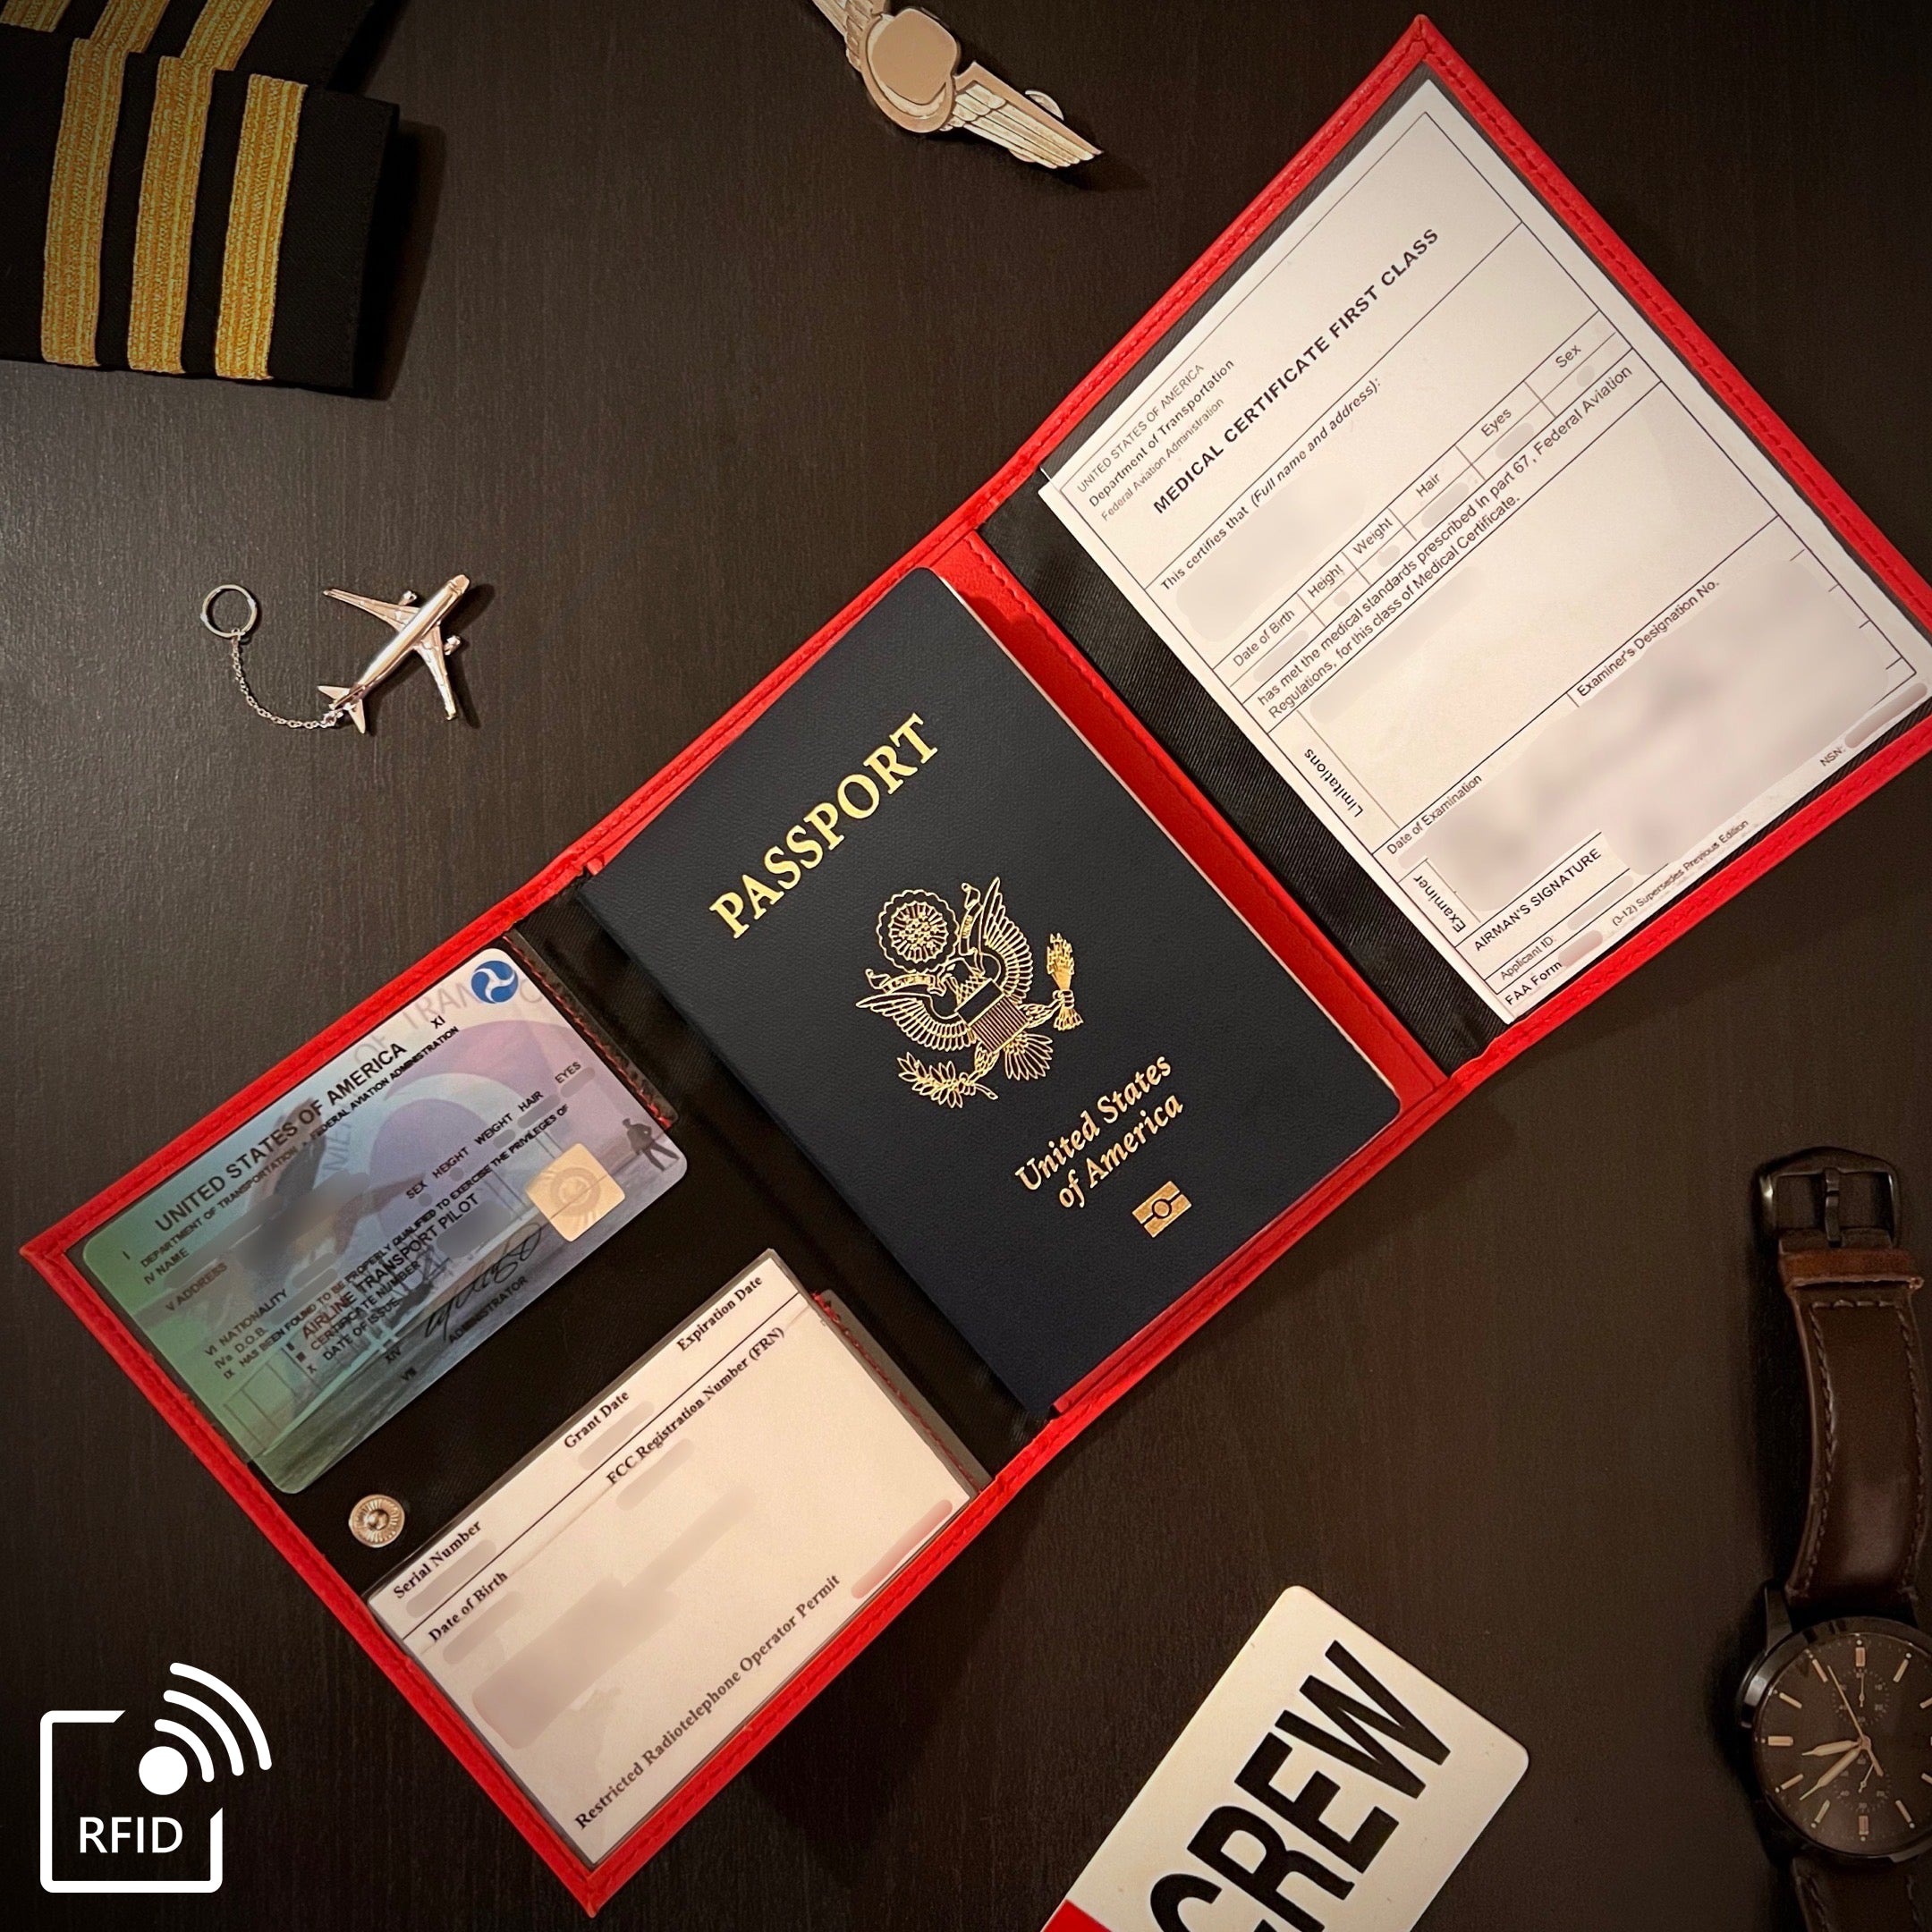 Pilot Passport Wallet 